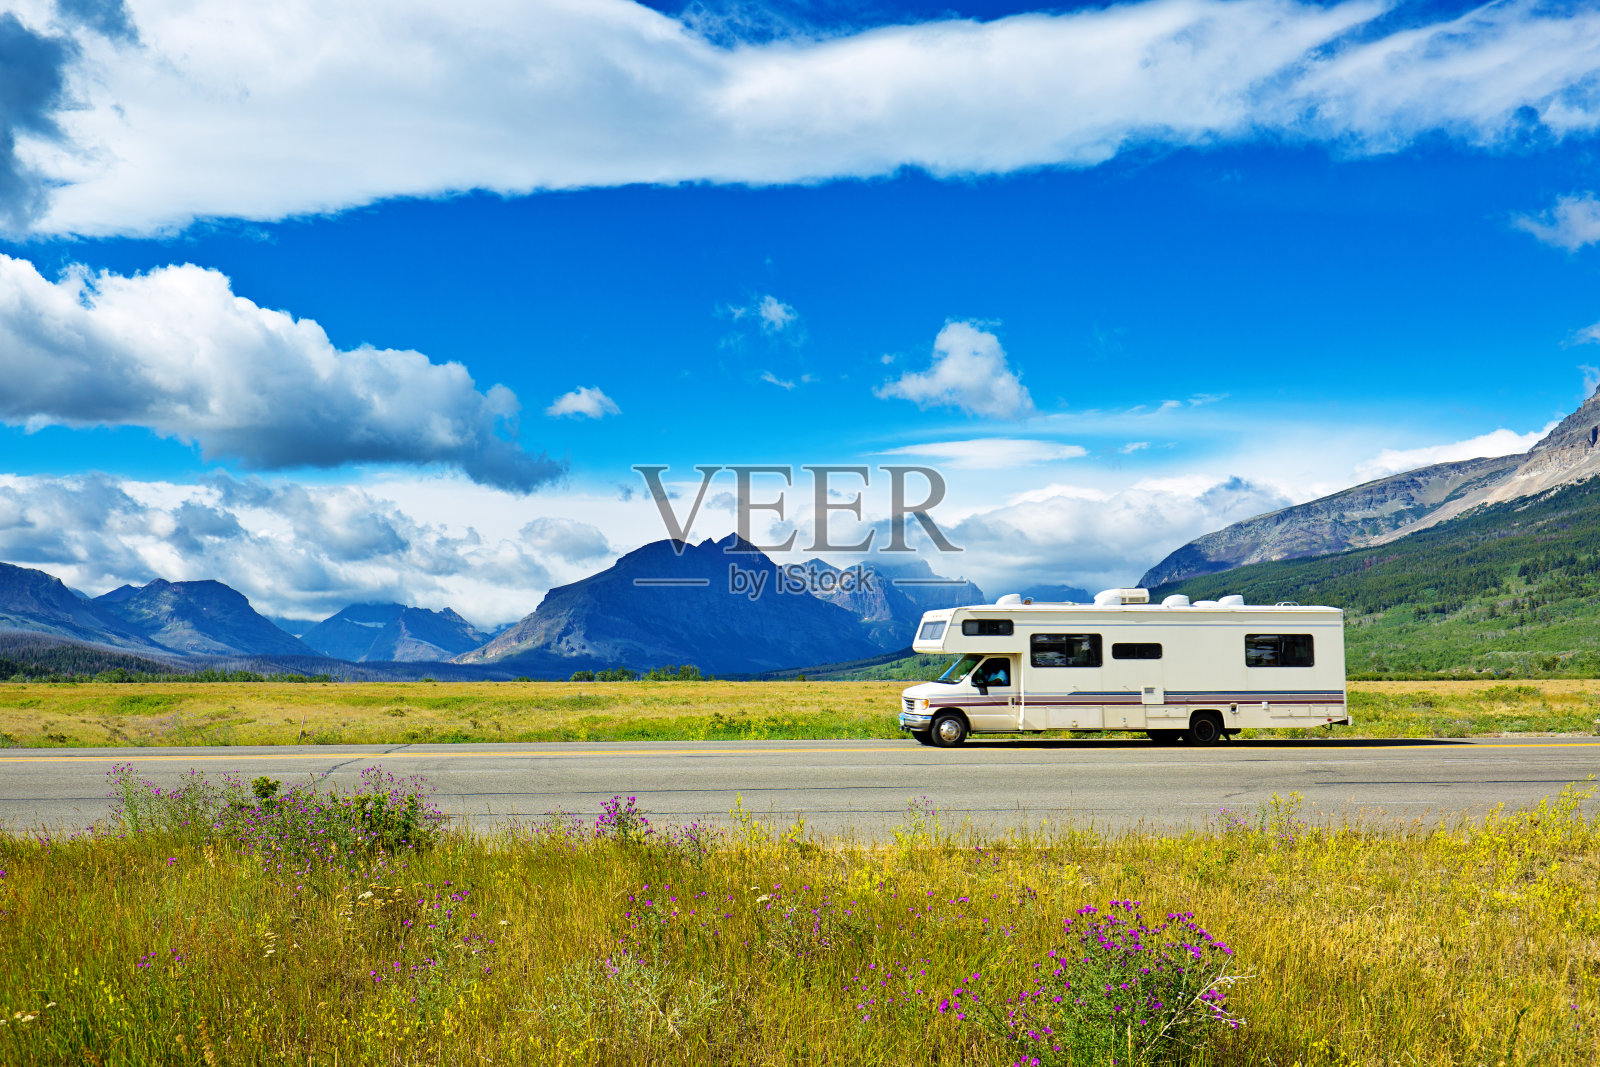 在蒙大拿冰川国家公园的房车露营车照片摄影图片